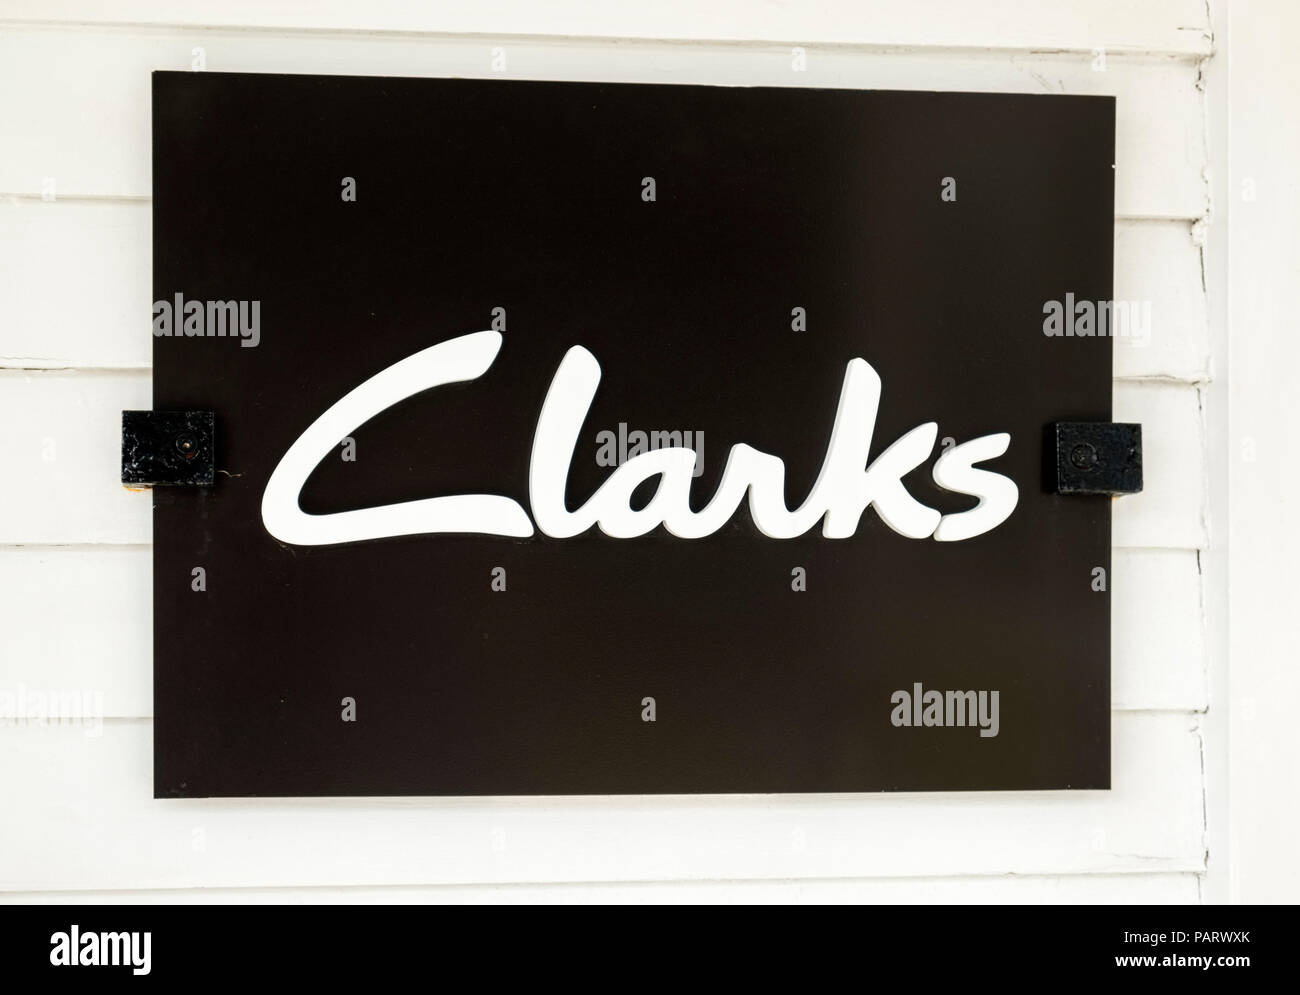 Clarks store logo sign, UK Stock Photo